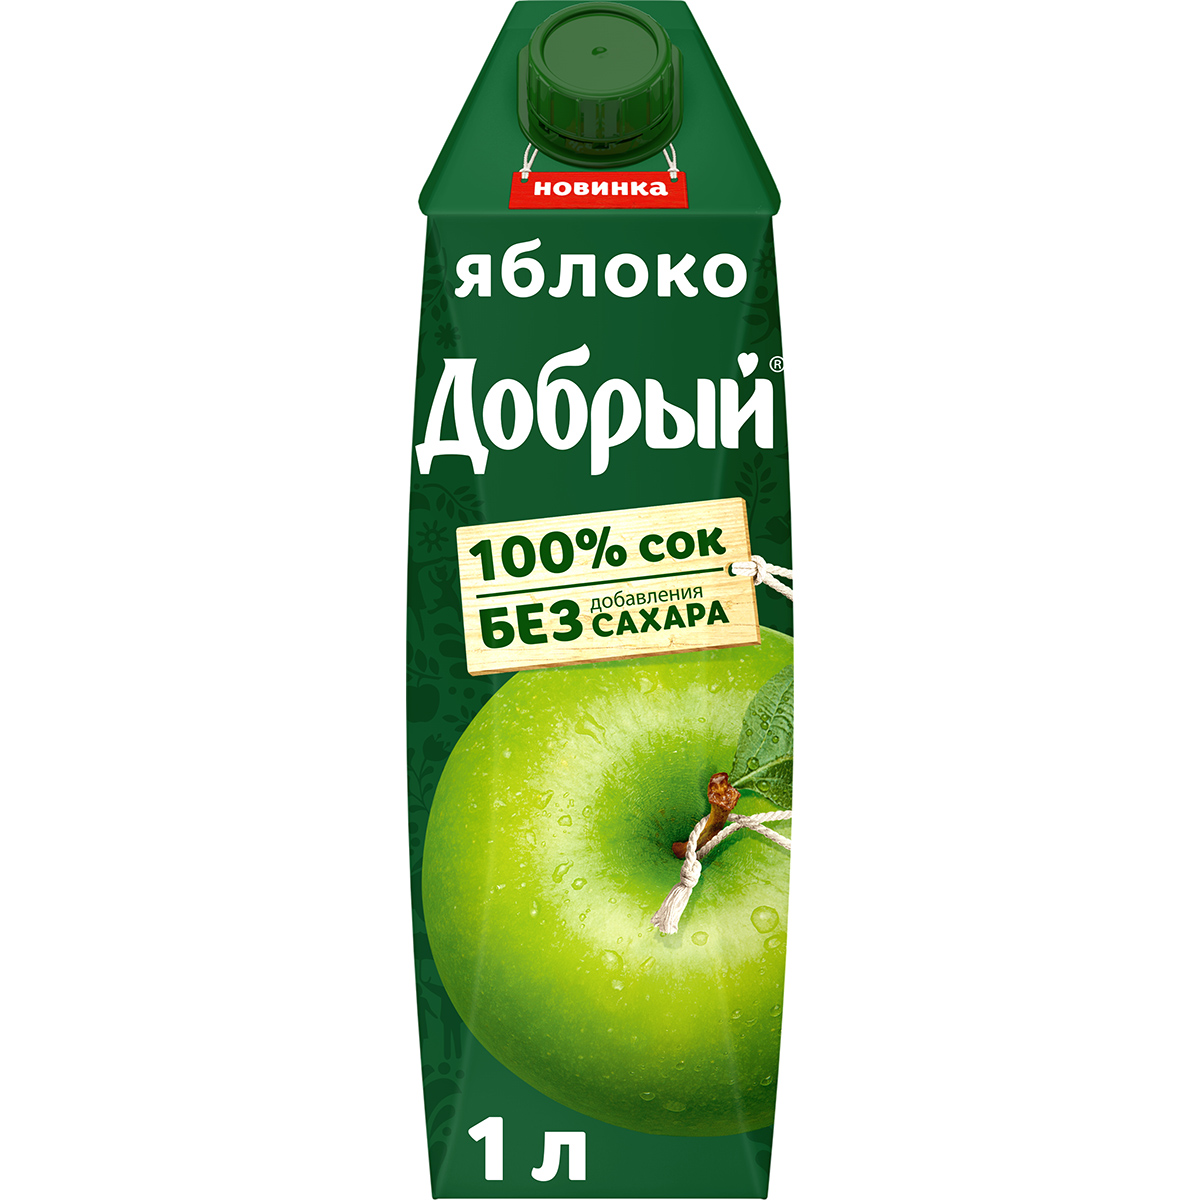 Сок Добрый яблочный осветленный 100% 1 л сок яблочный добрый осветлённый 0 33 л